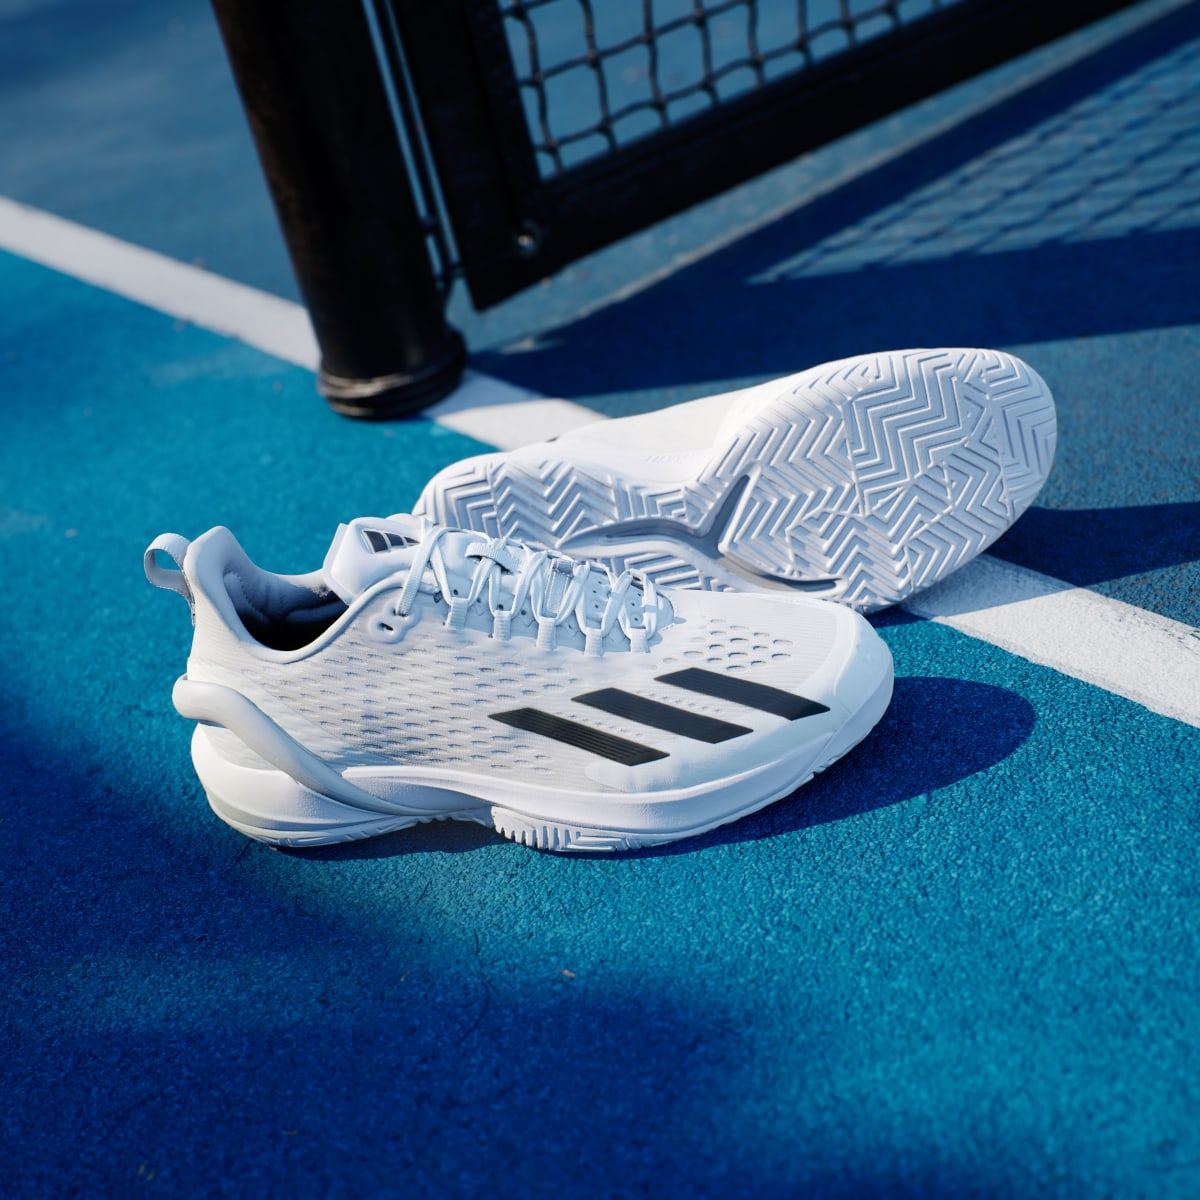 Adidas Adizero Cybersonic Tennis Shoes. 8